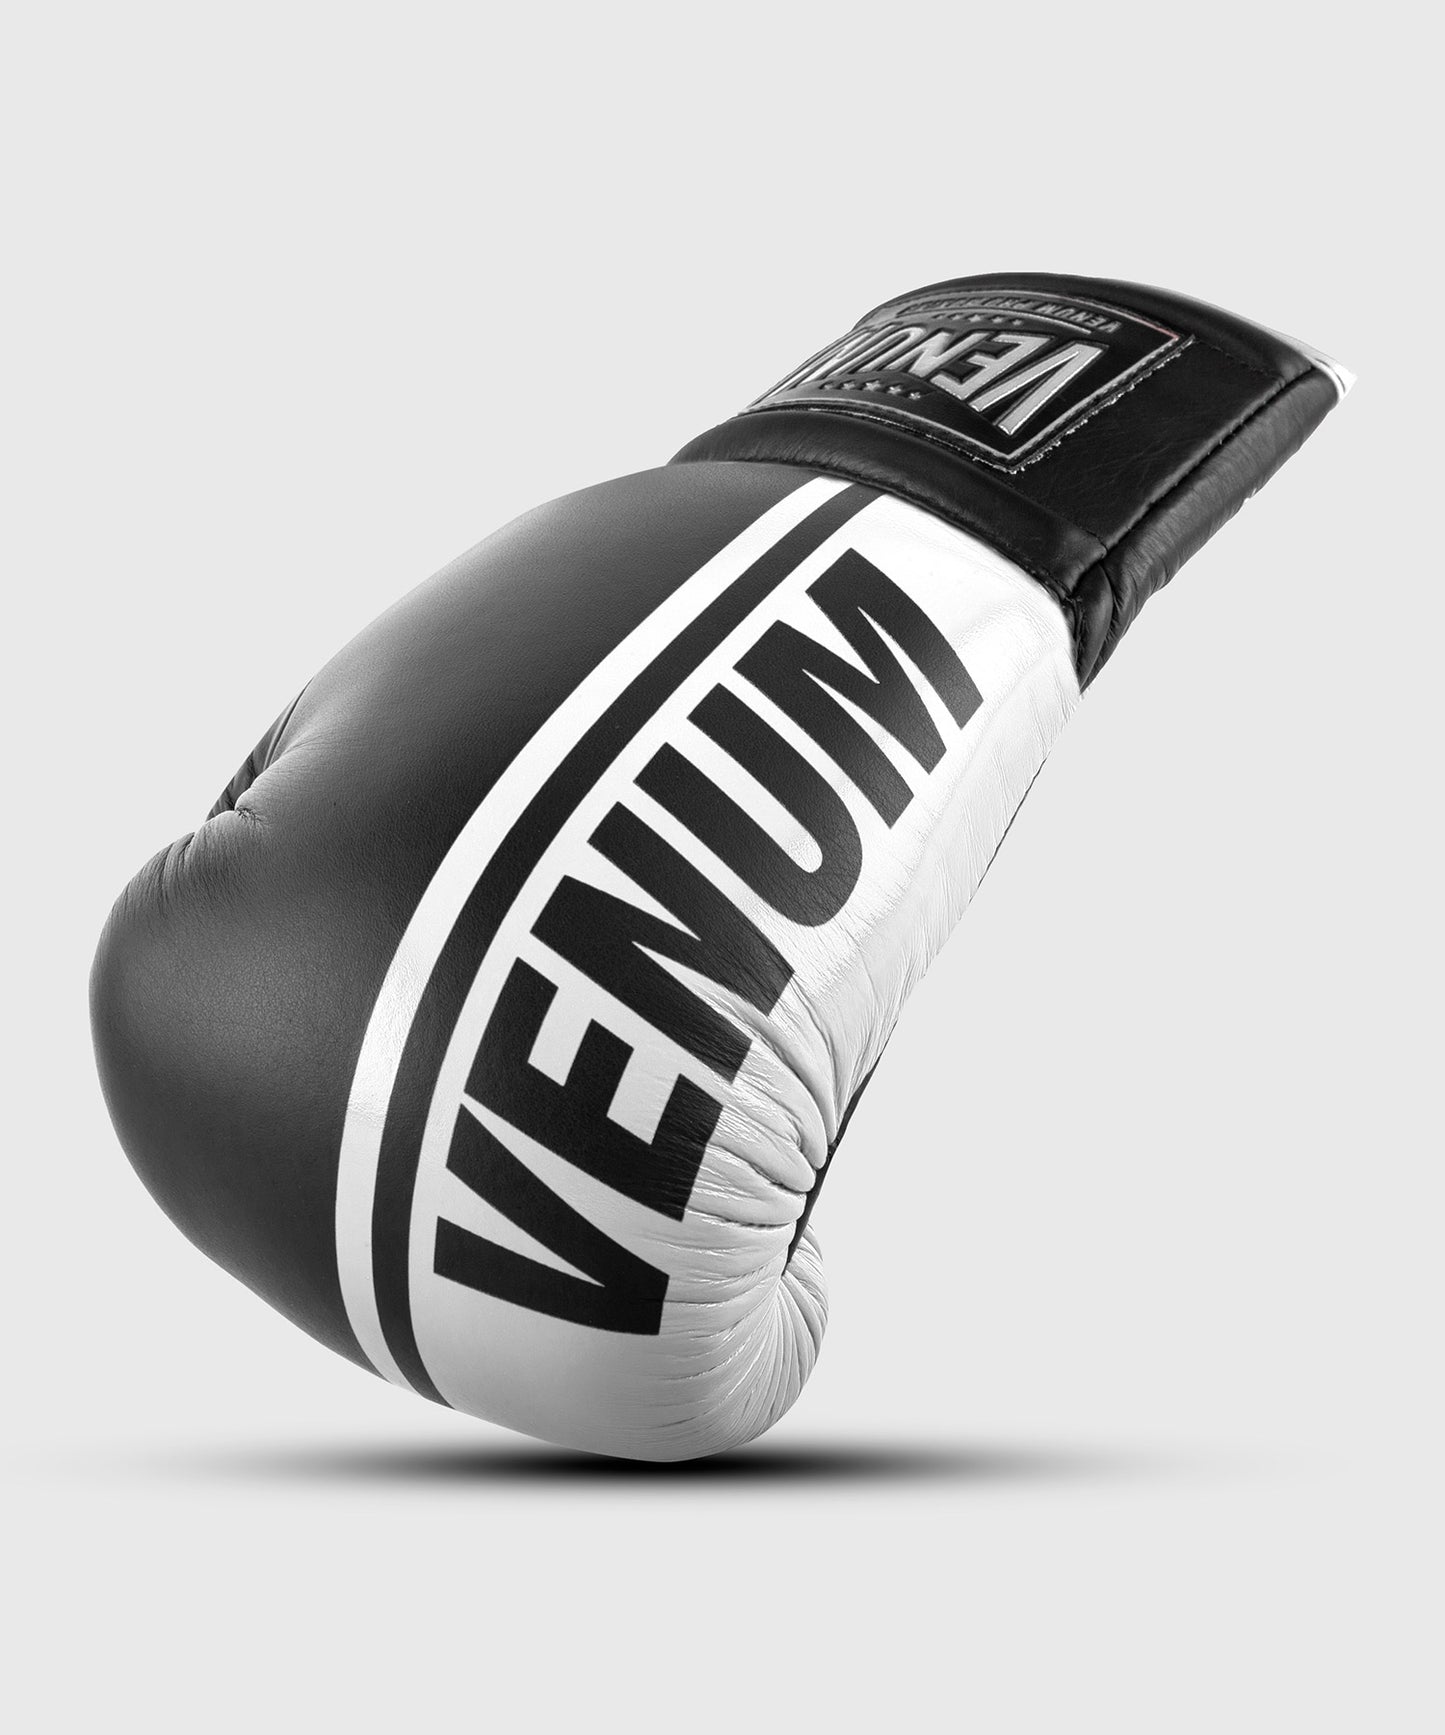 Guantoni da boxe professionali Venum Shield – Lacci